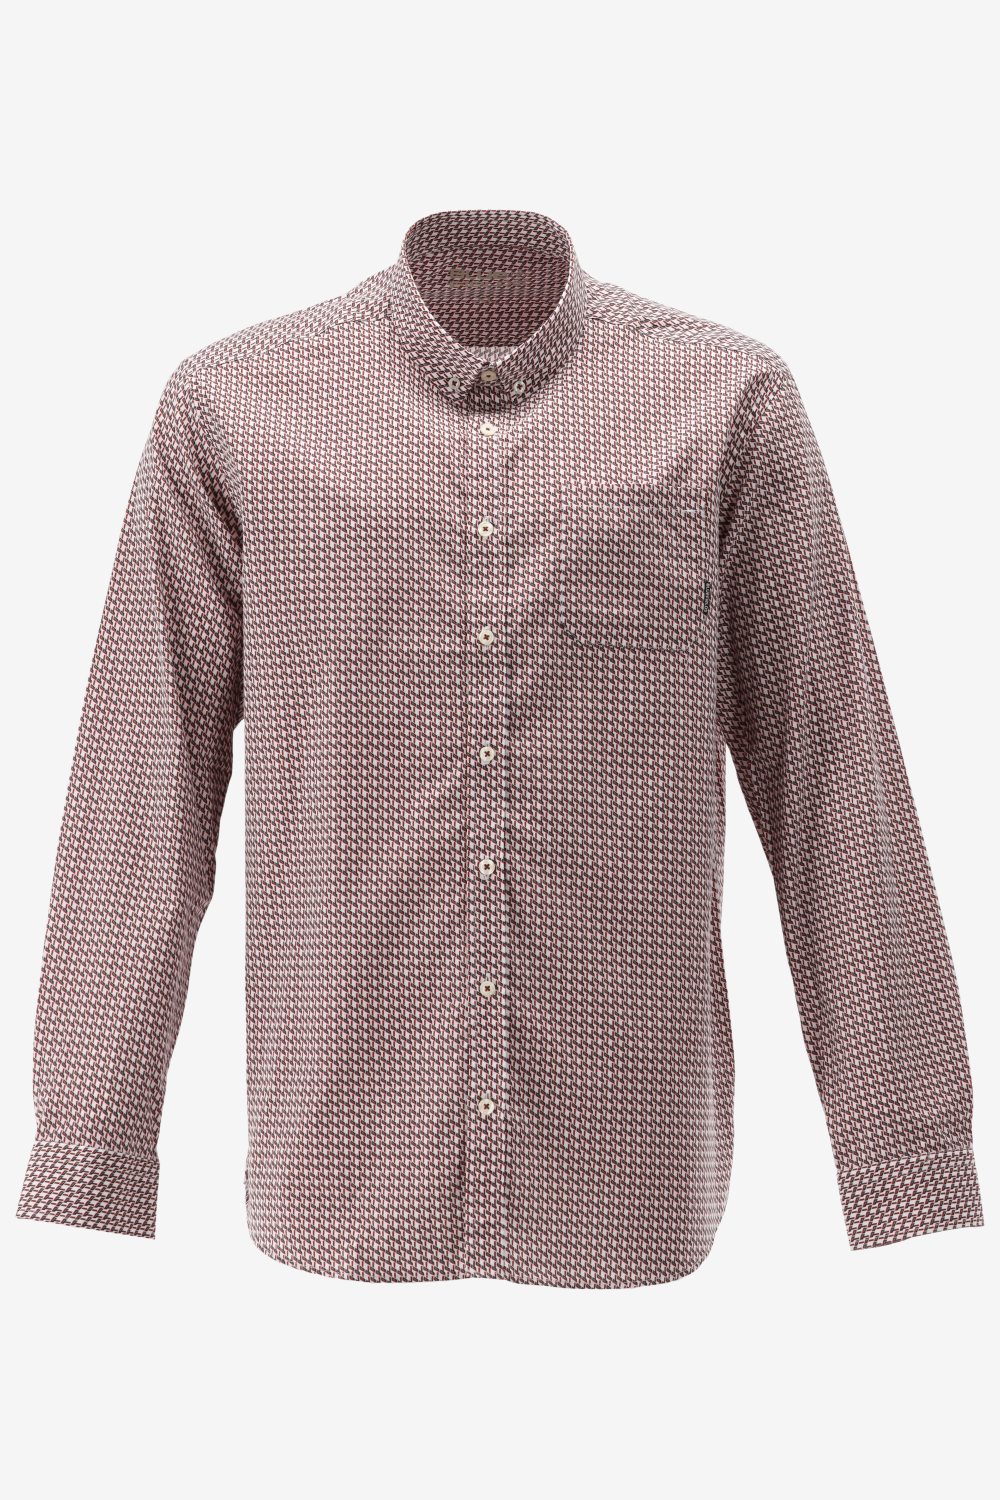 BlueFields Overhemd Shirt Ls Printed Pop 21442003 1147 Mannen Maat - XXL